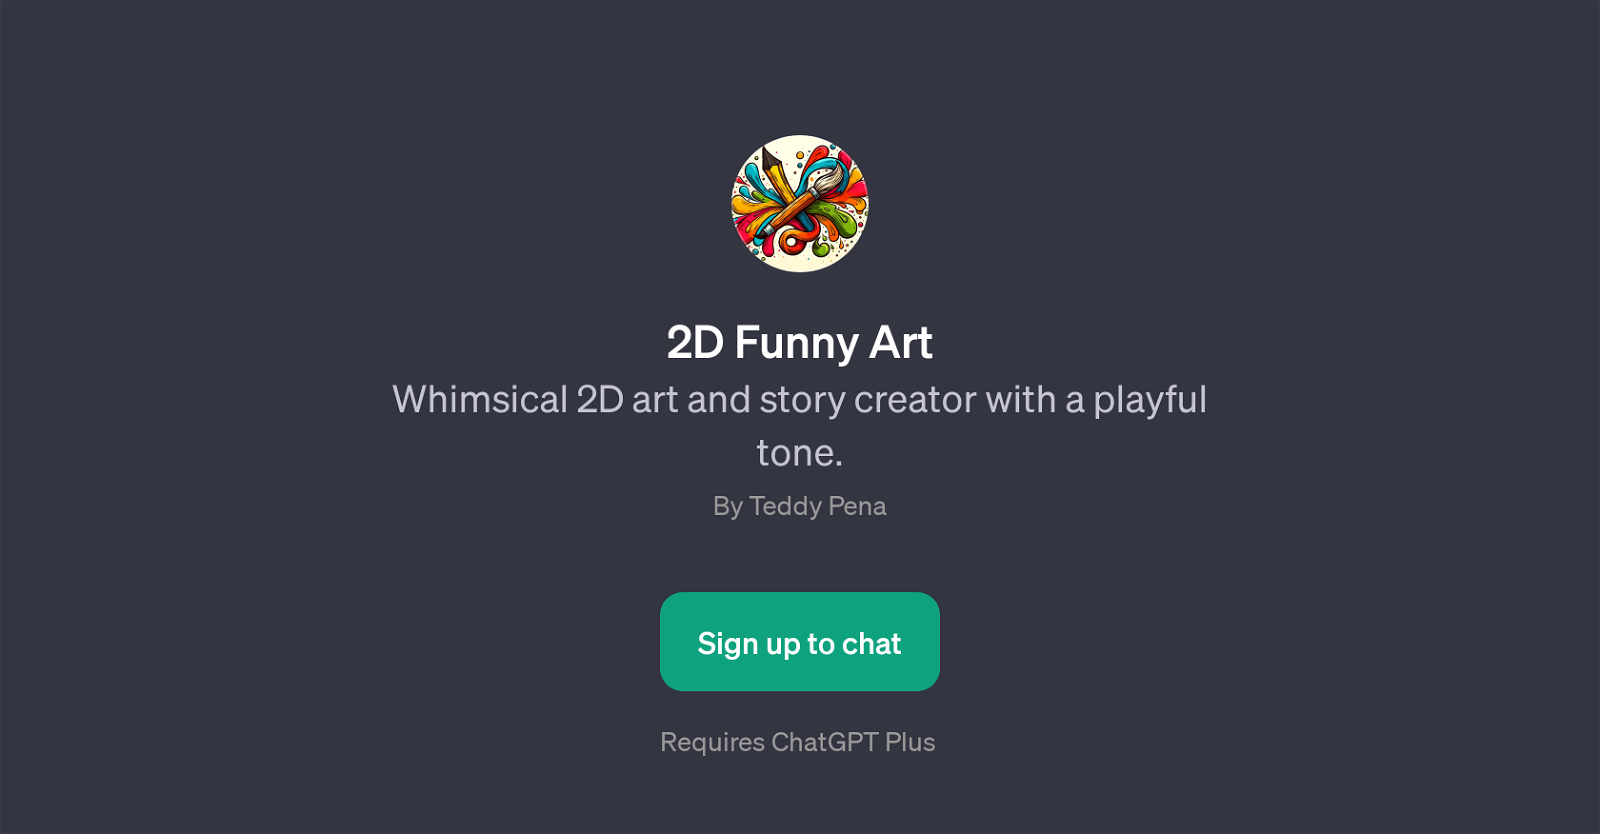 2D Funny Art website